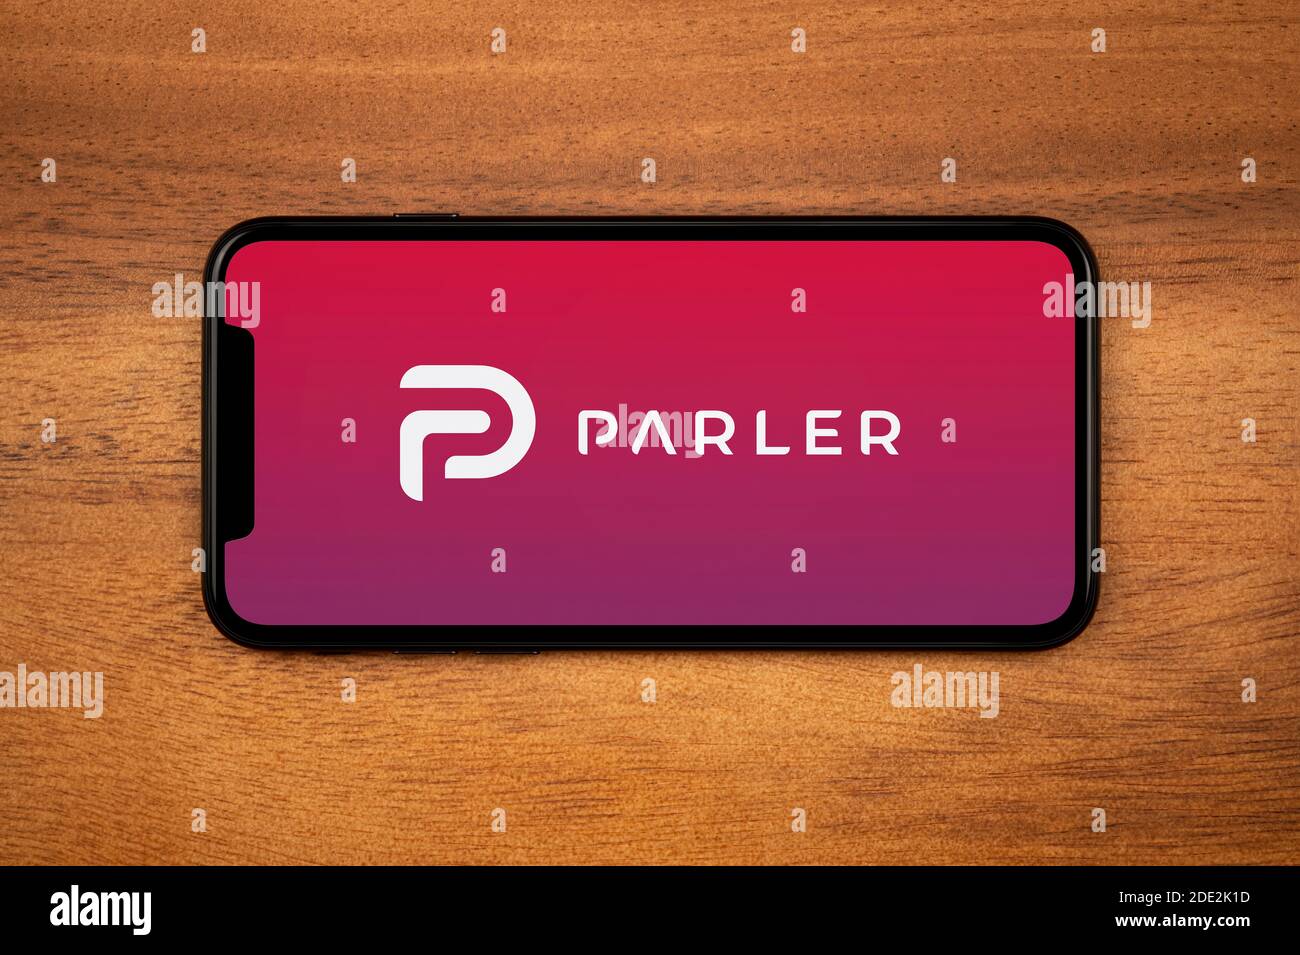 Un smartphone affichant le logo Parler repose sur une table en bois simple (usage éditorial uniquement). Banque D'Images